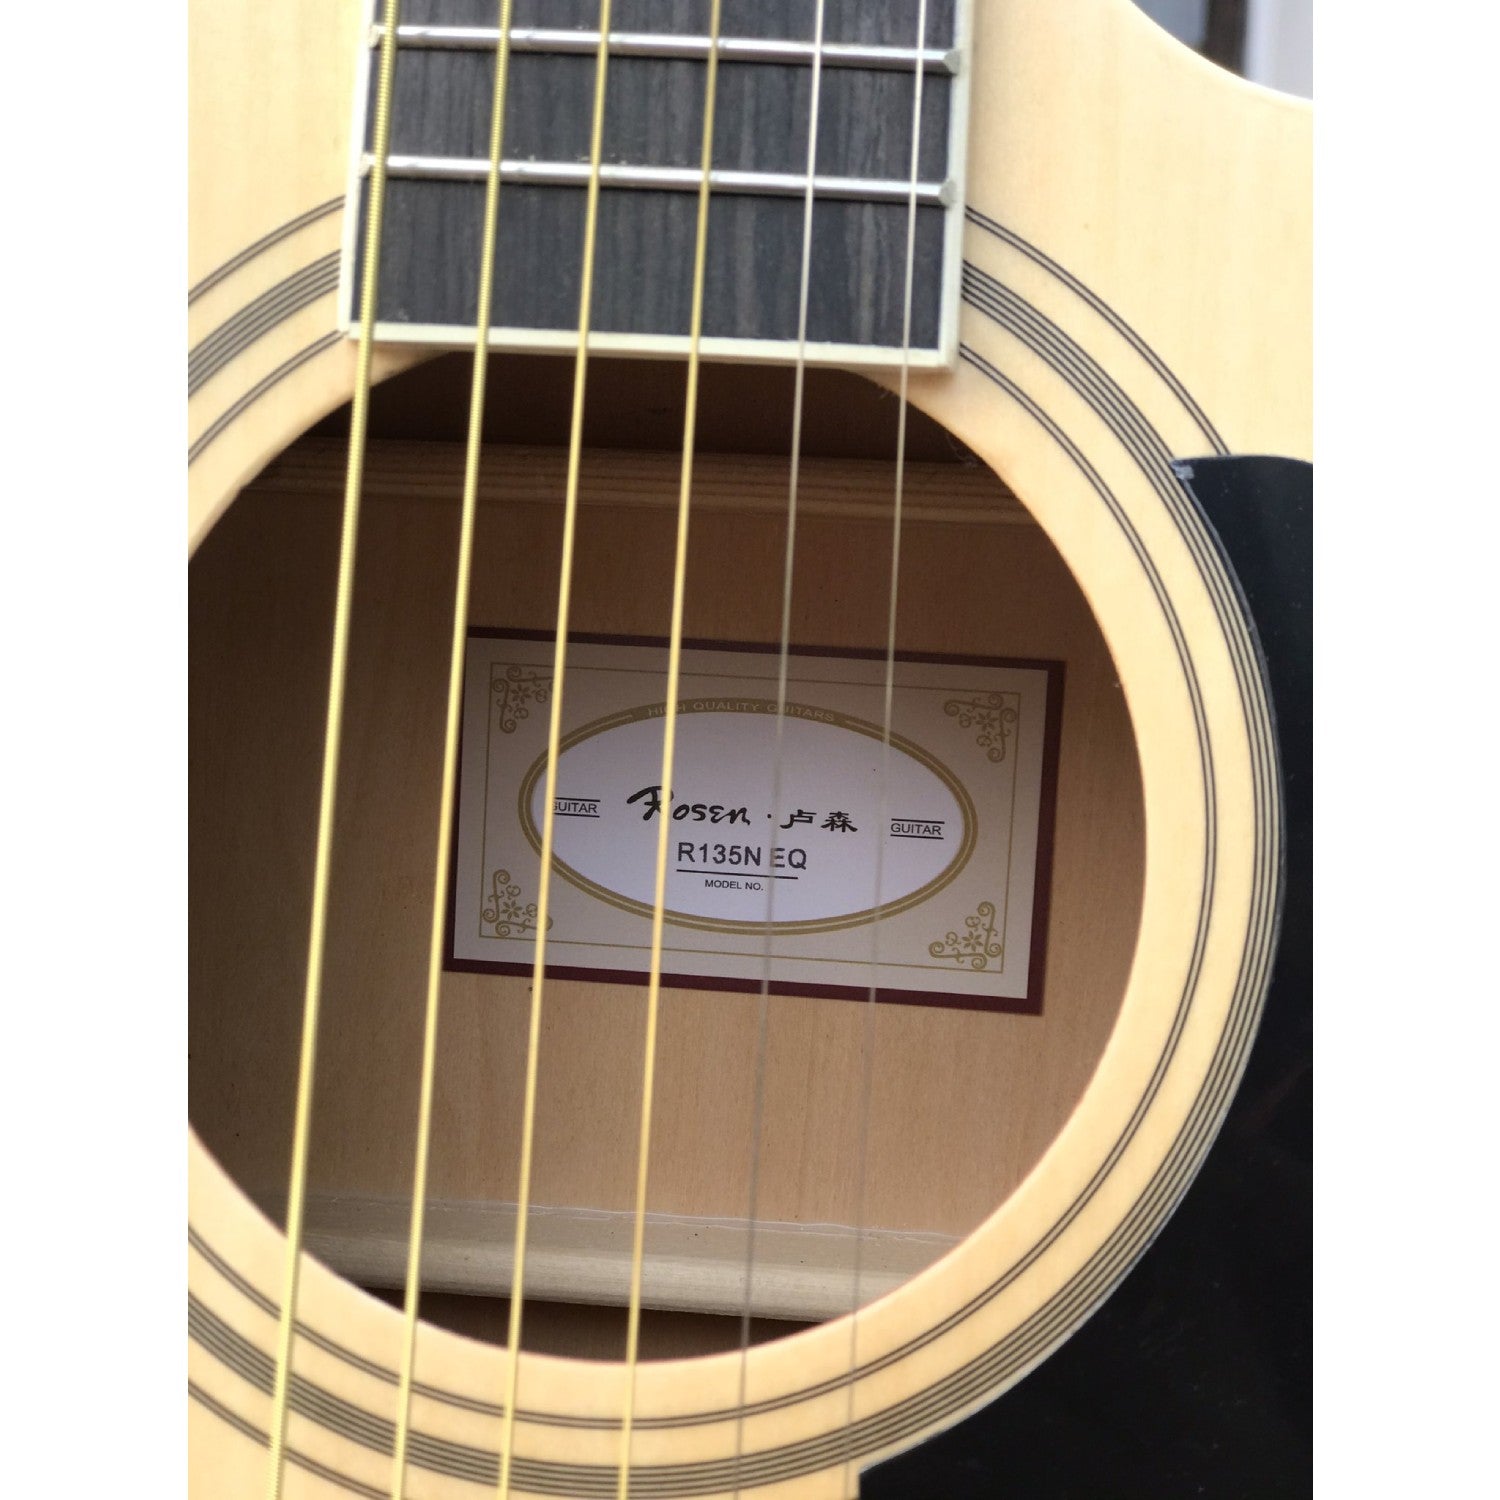 Đàn Guitar Acoustic Rosen R135 EQ (Full phụ kiện) - Việt Music